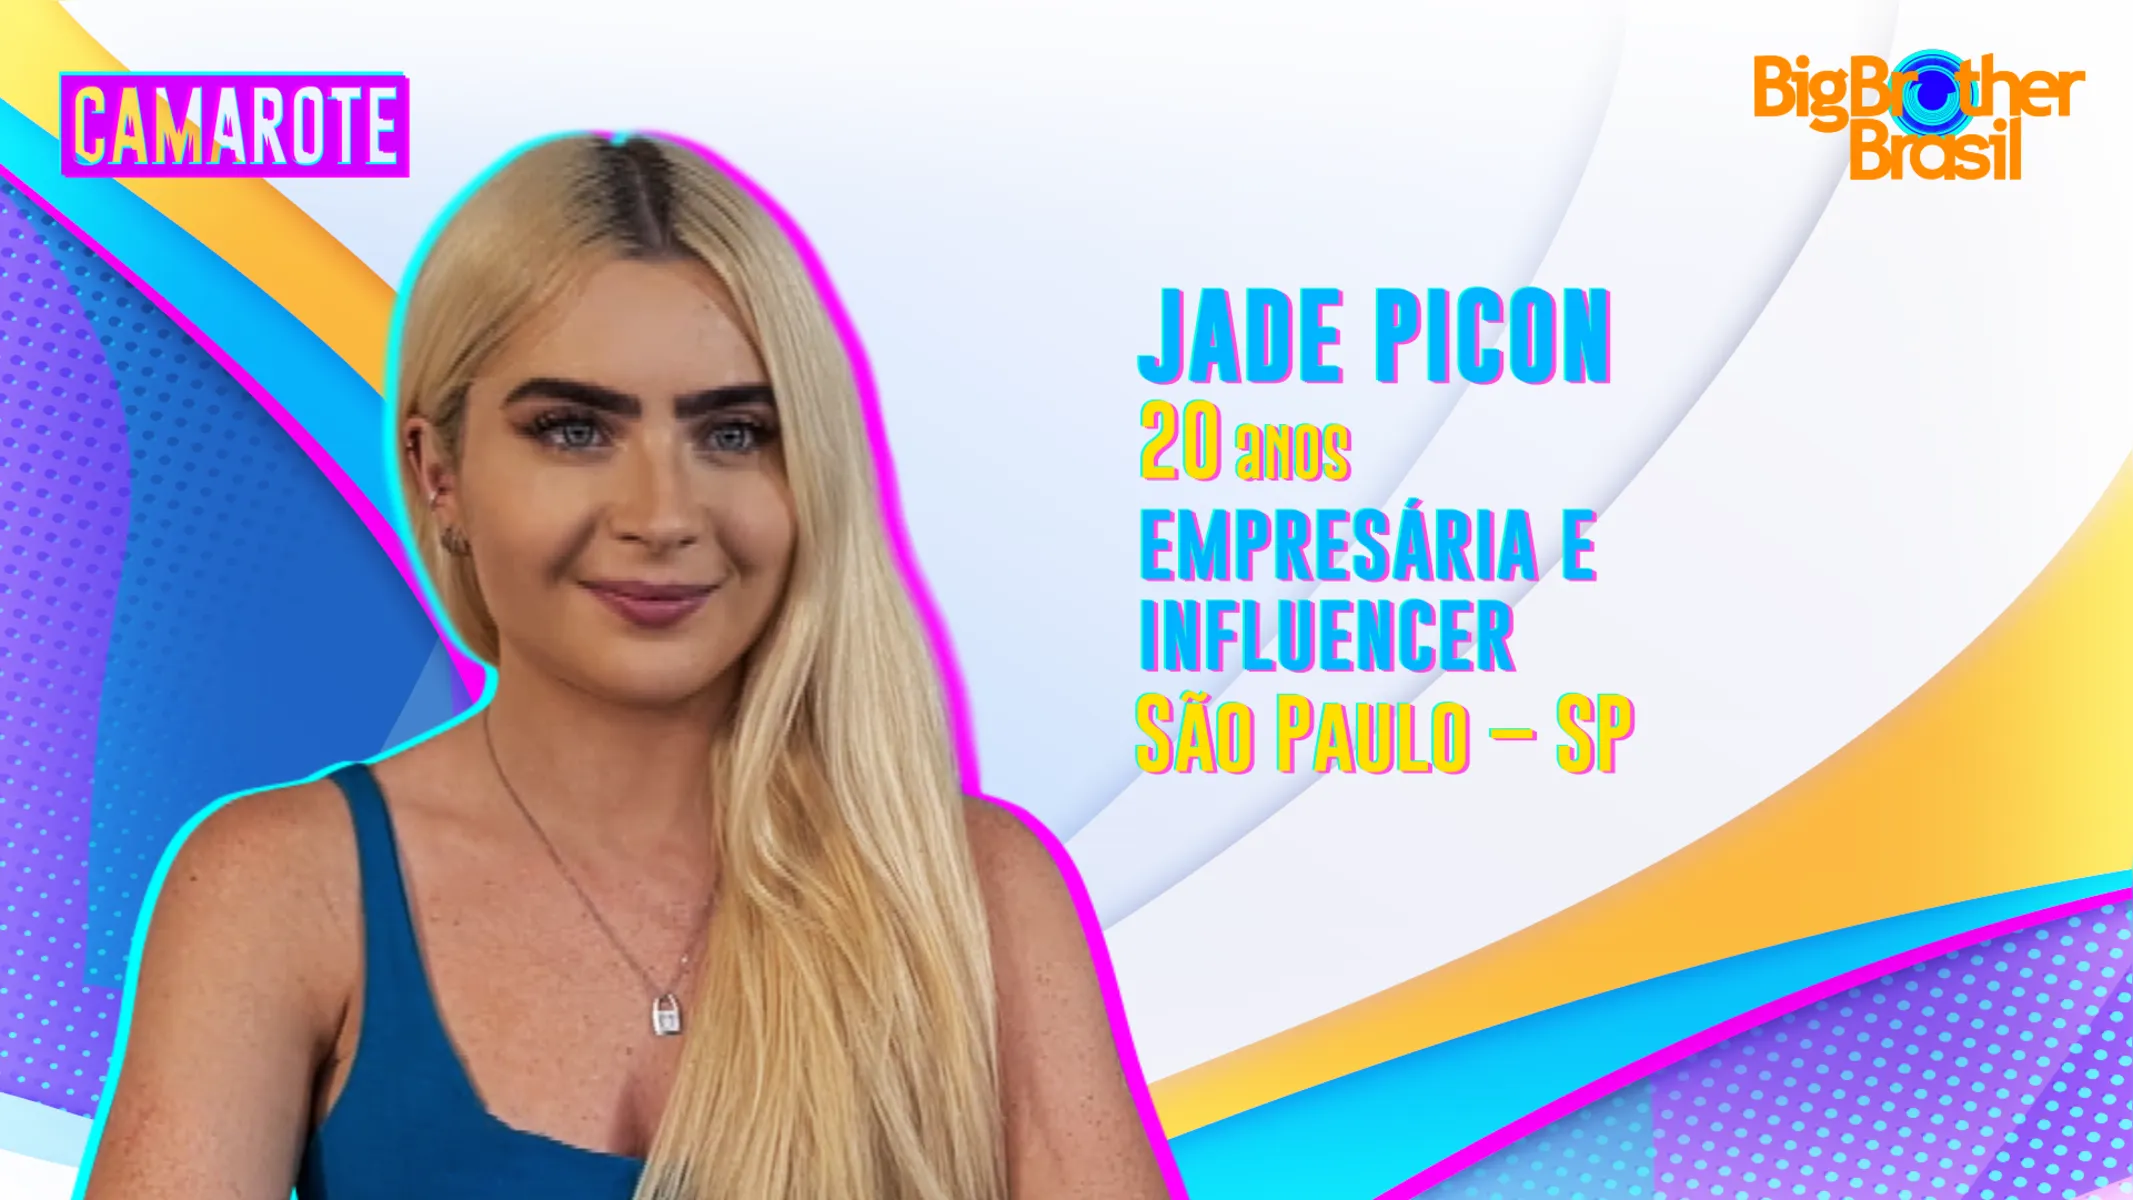 Jade Picon já namorou com o ator João Guilherme, no momento afirma estar sozinha